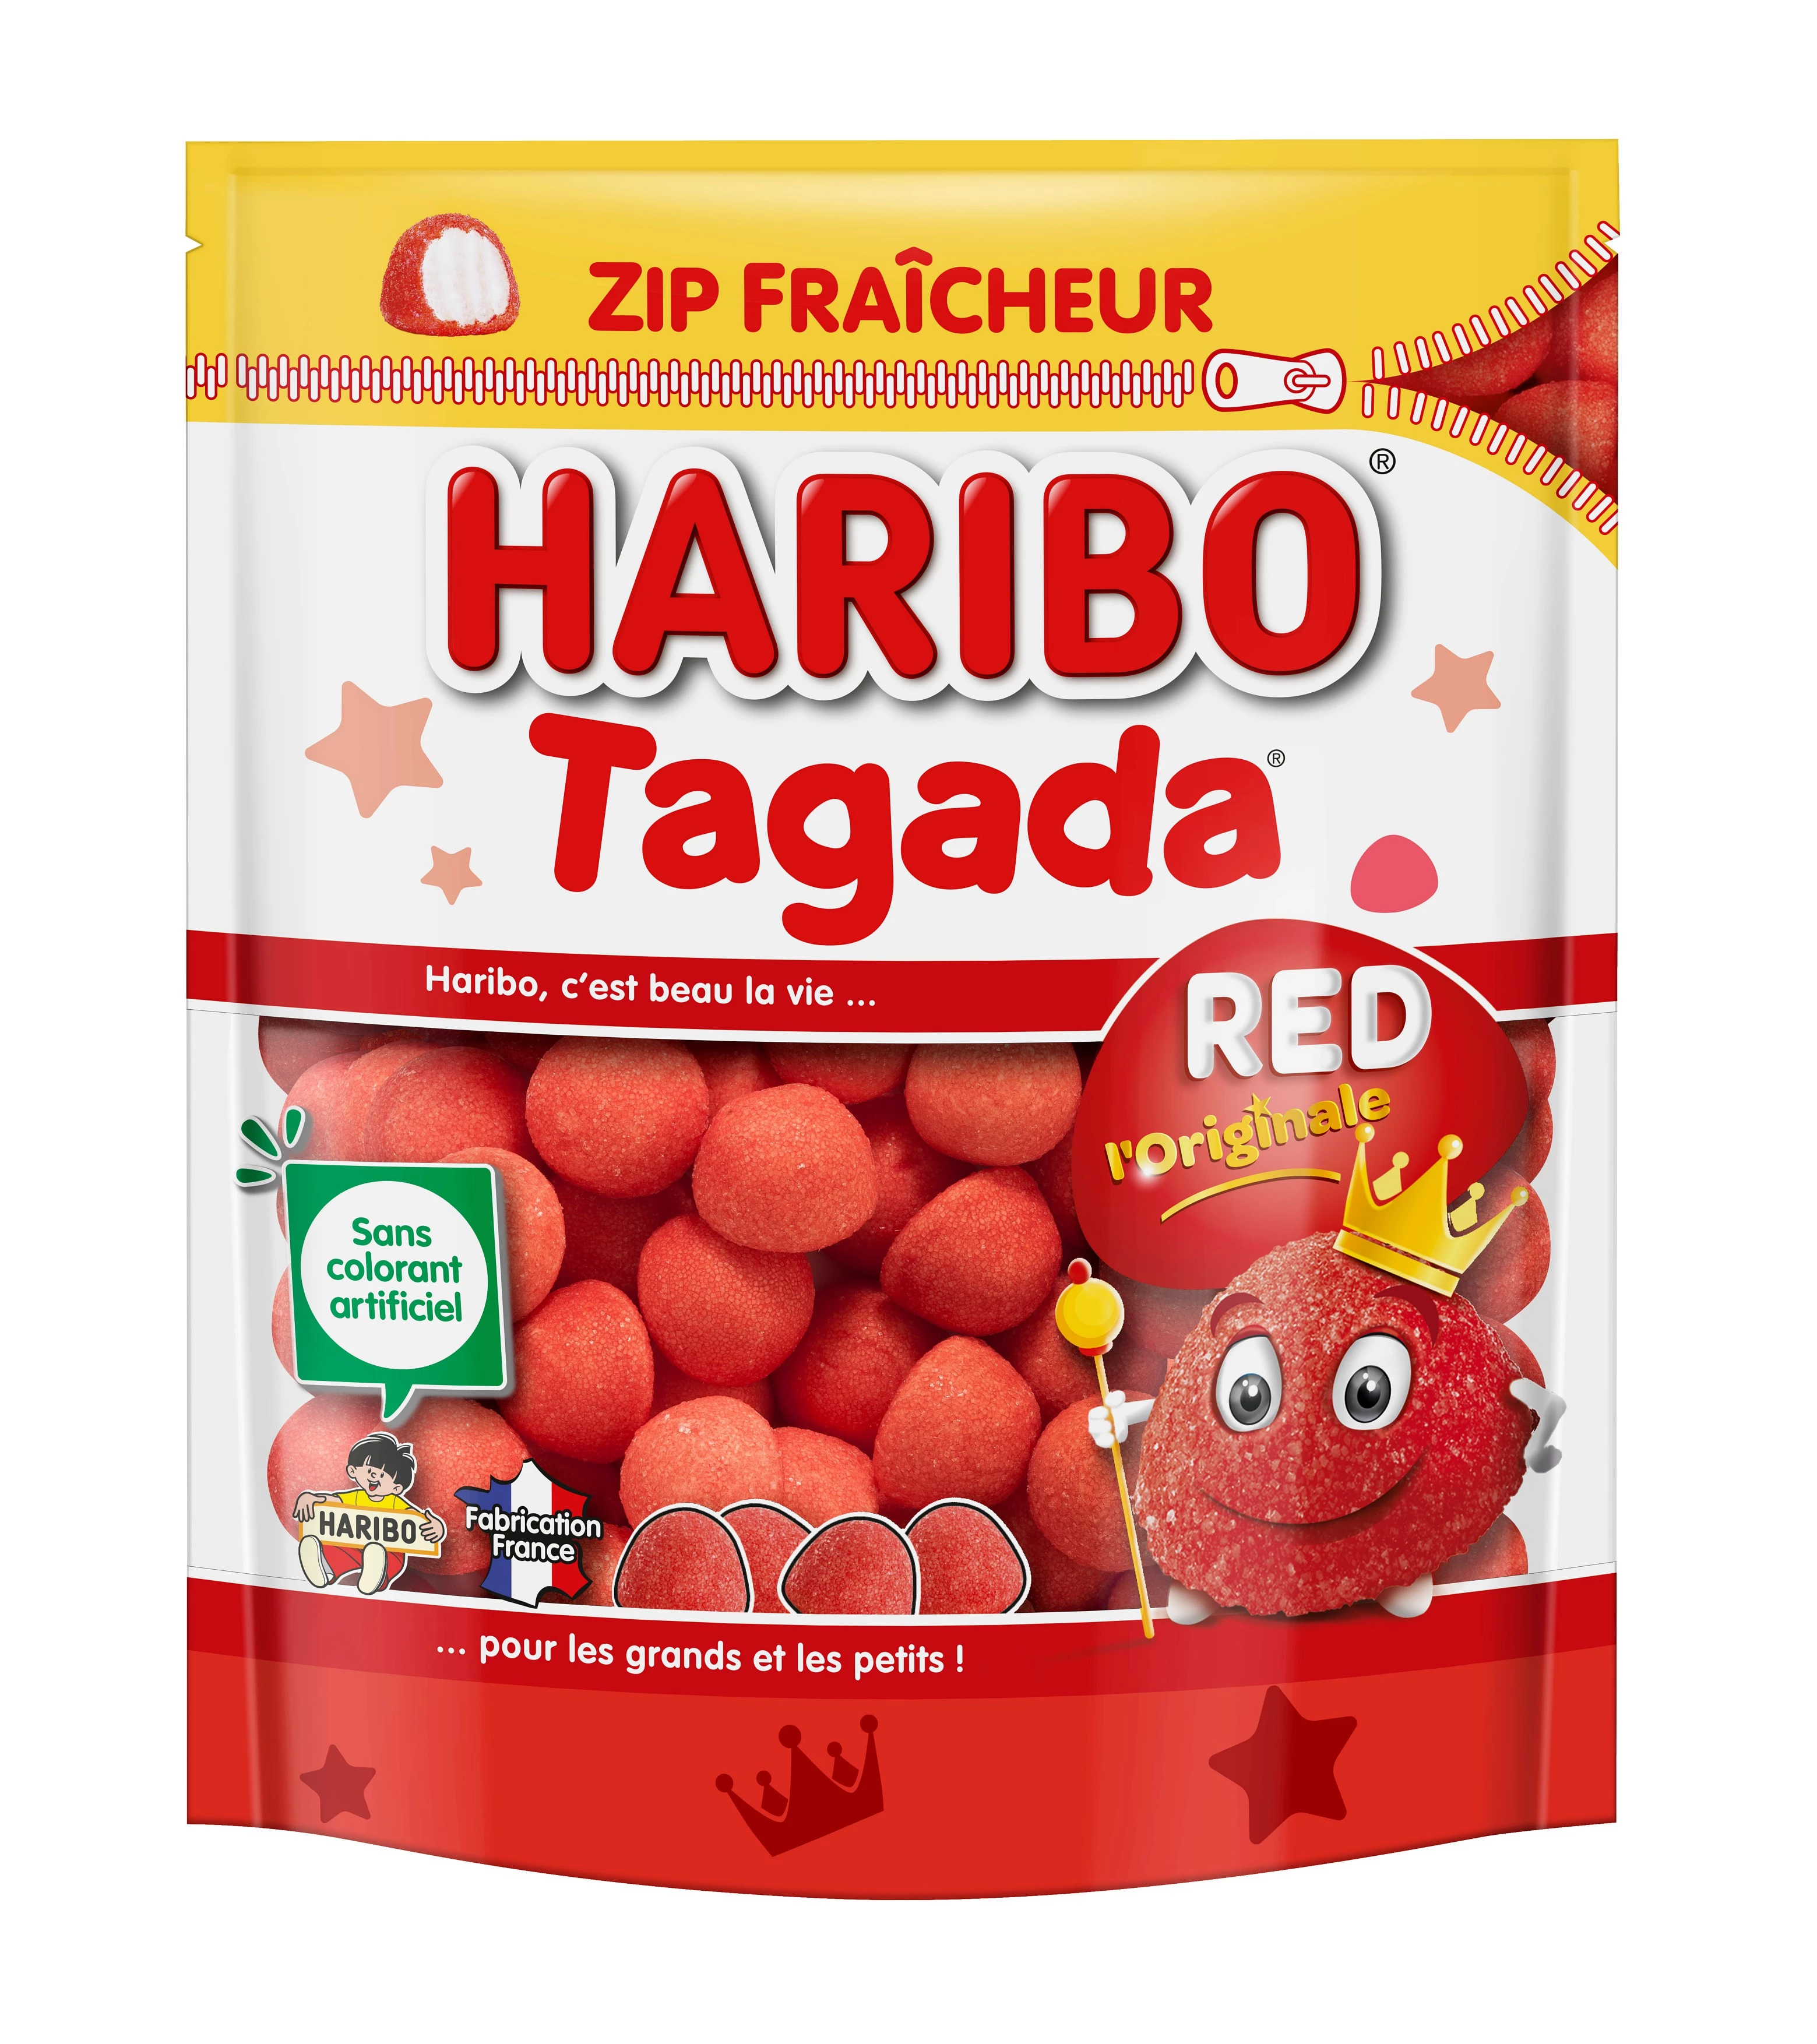 Bonbons Tagada zip fraicheur, 220g - HARIBO